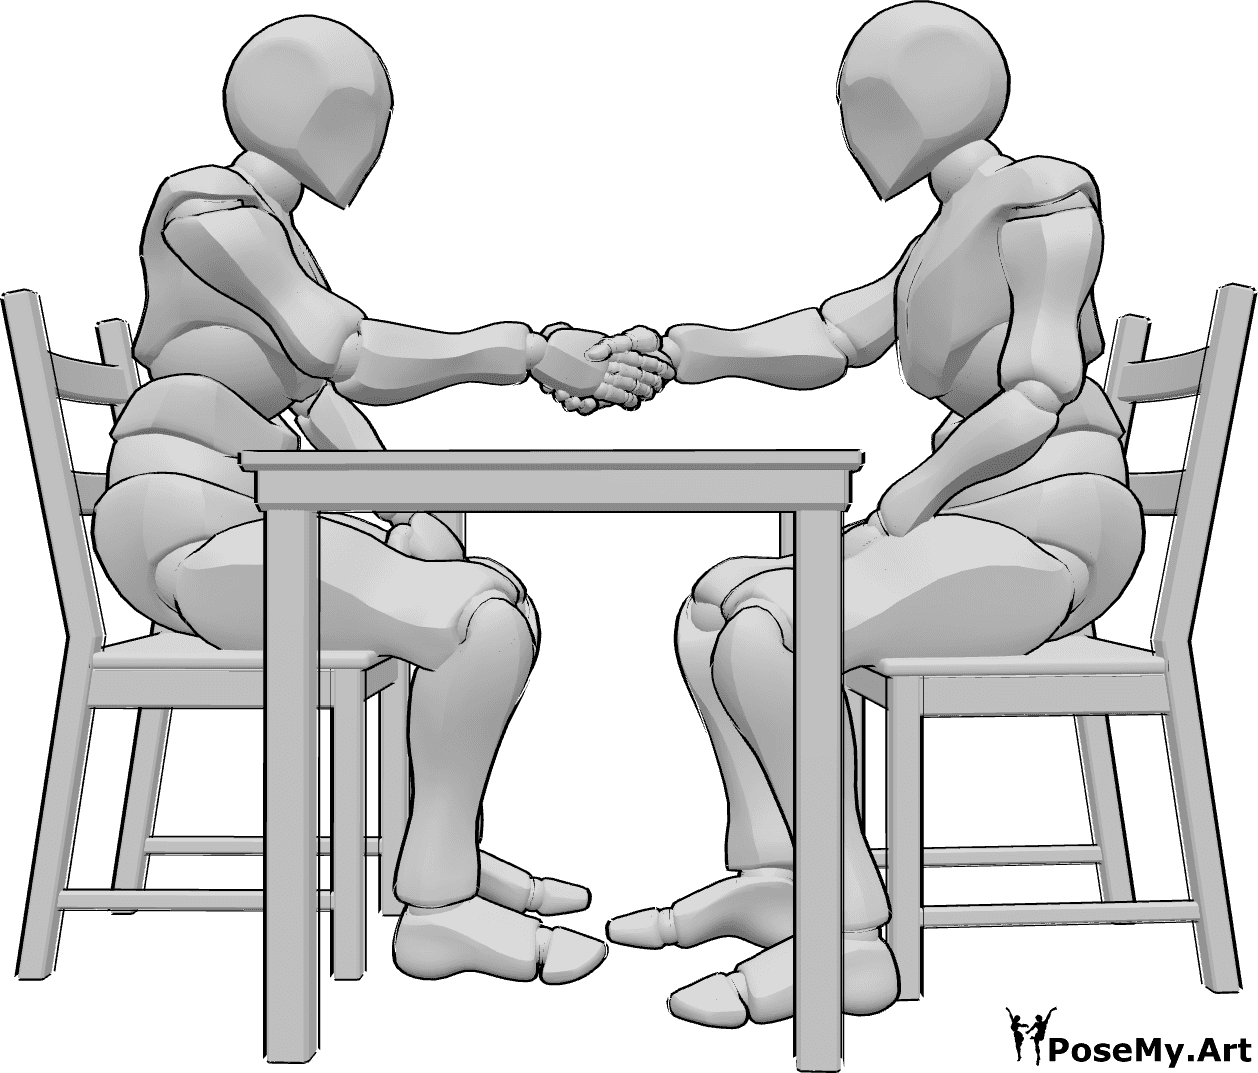 Referência de poses- Homem sentado em pose de aperto de mão - Dois homens estão sentados numa mesa em frente um do outro e apertam as mãos